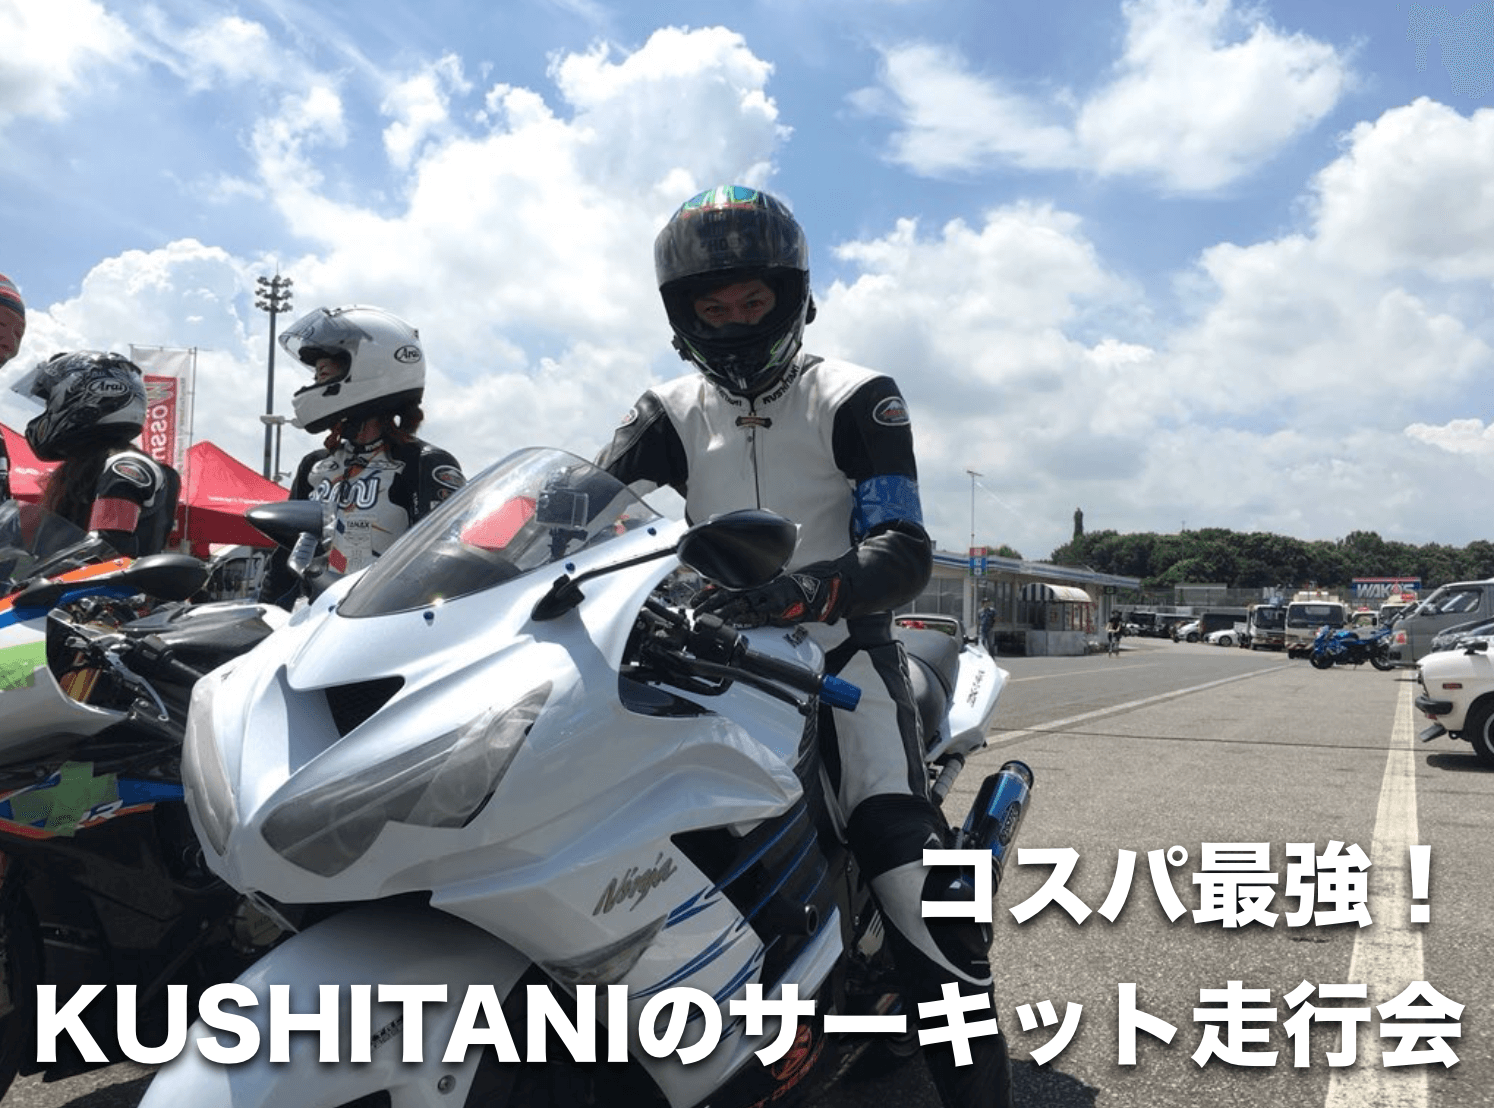 Kushitaniのサーキット走行会はaクラスが一番コスパがいいぞ バイク乗ろうぜ